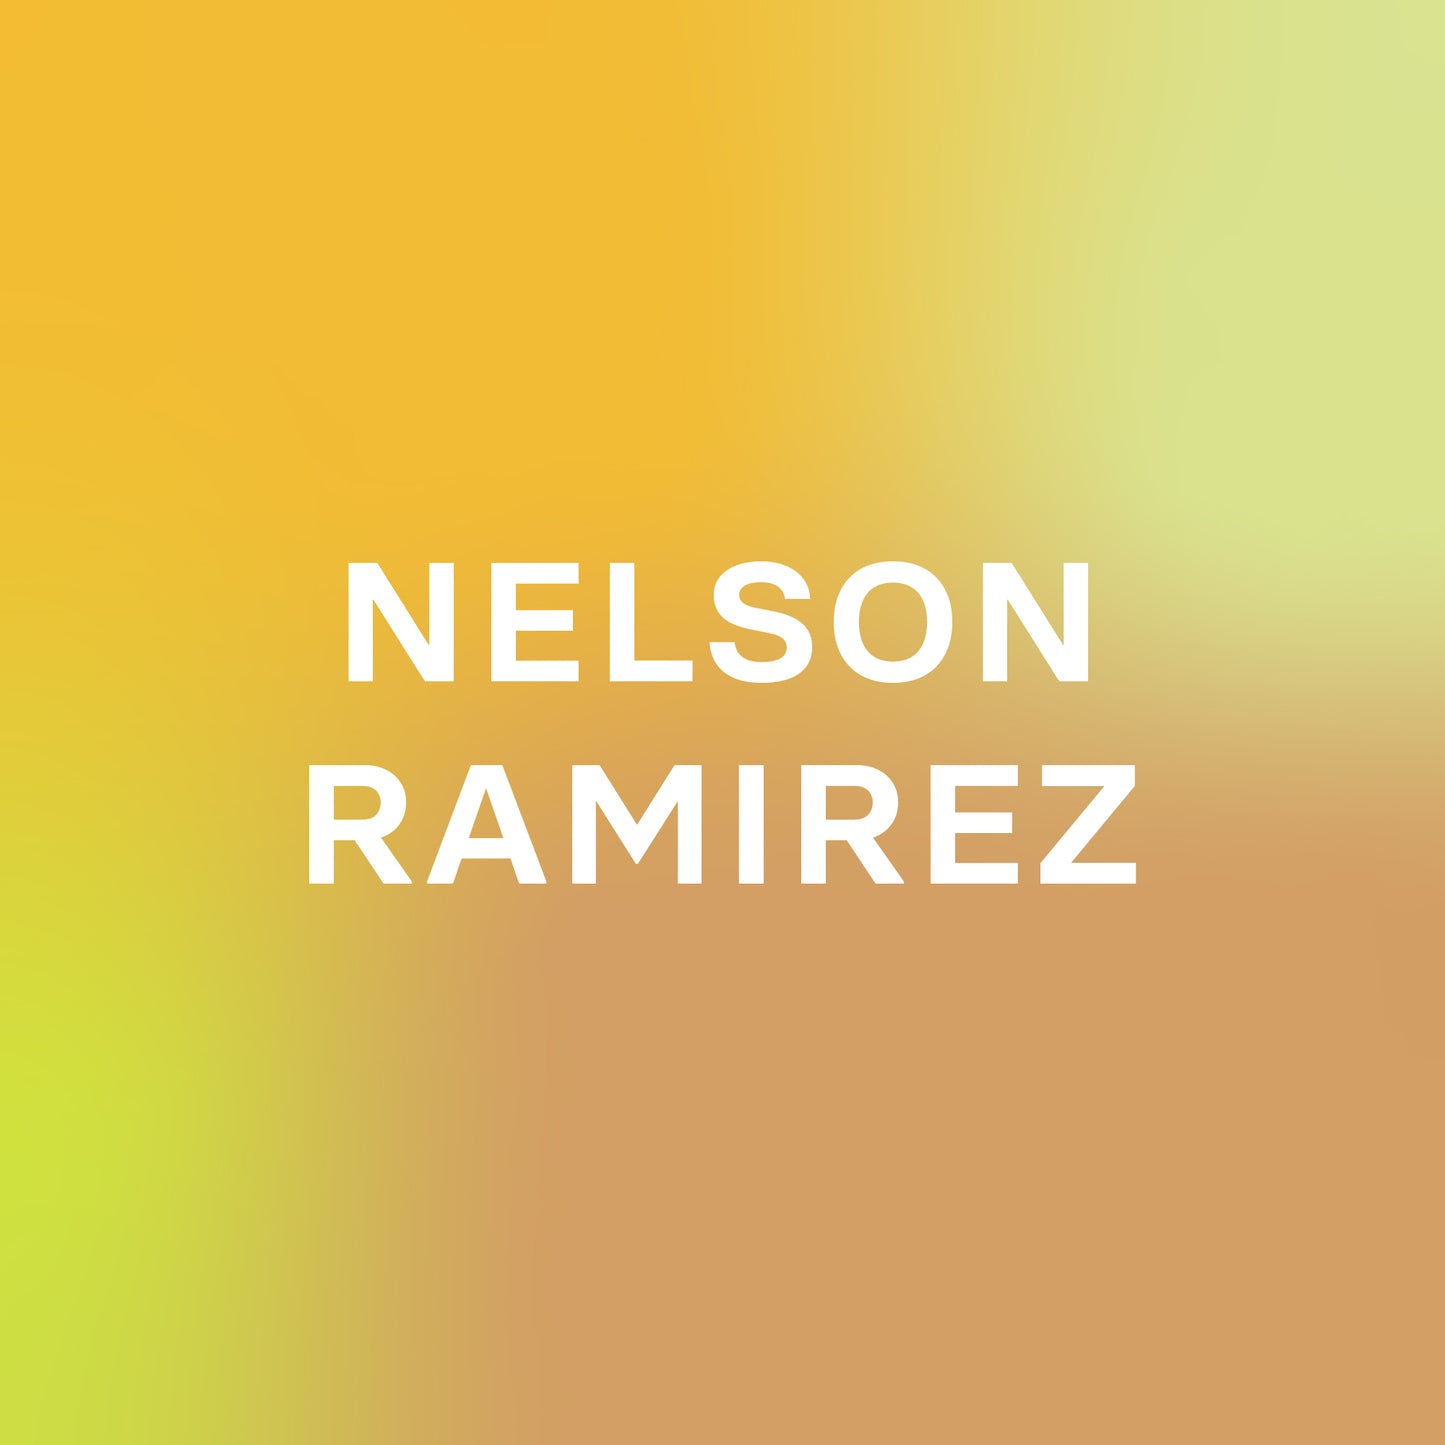 Nelson Ramirez